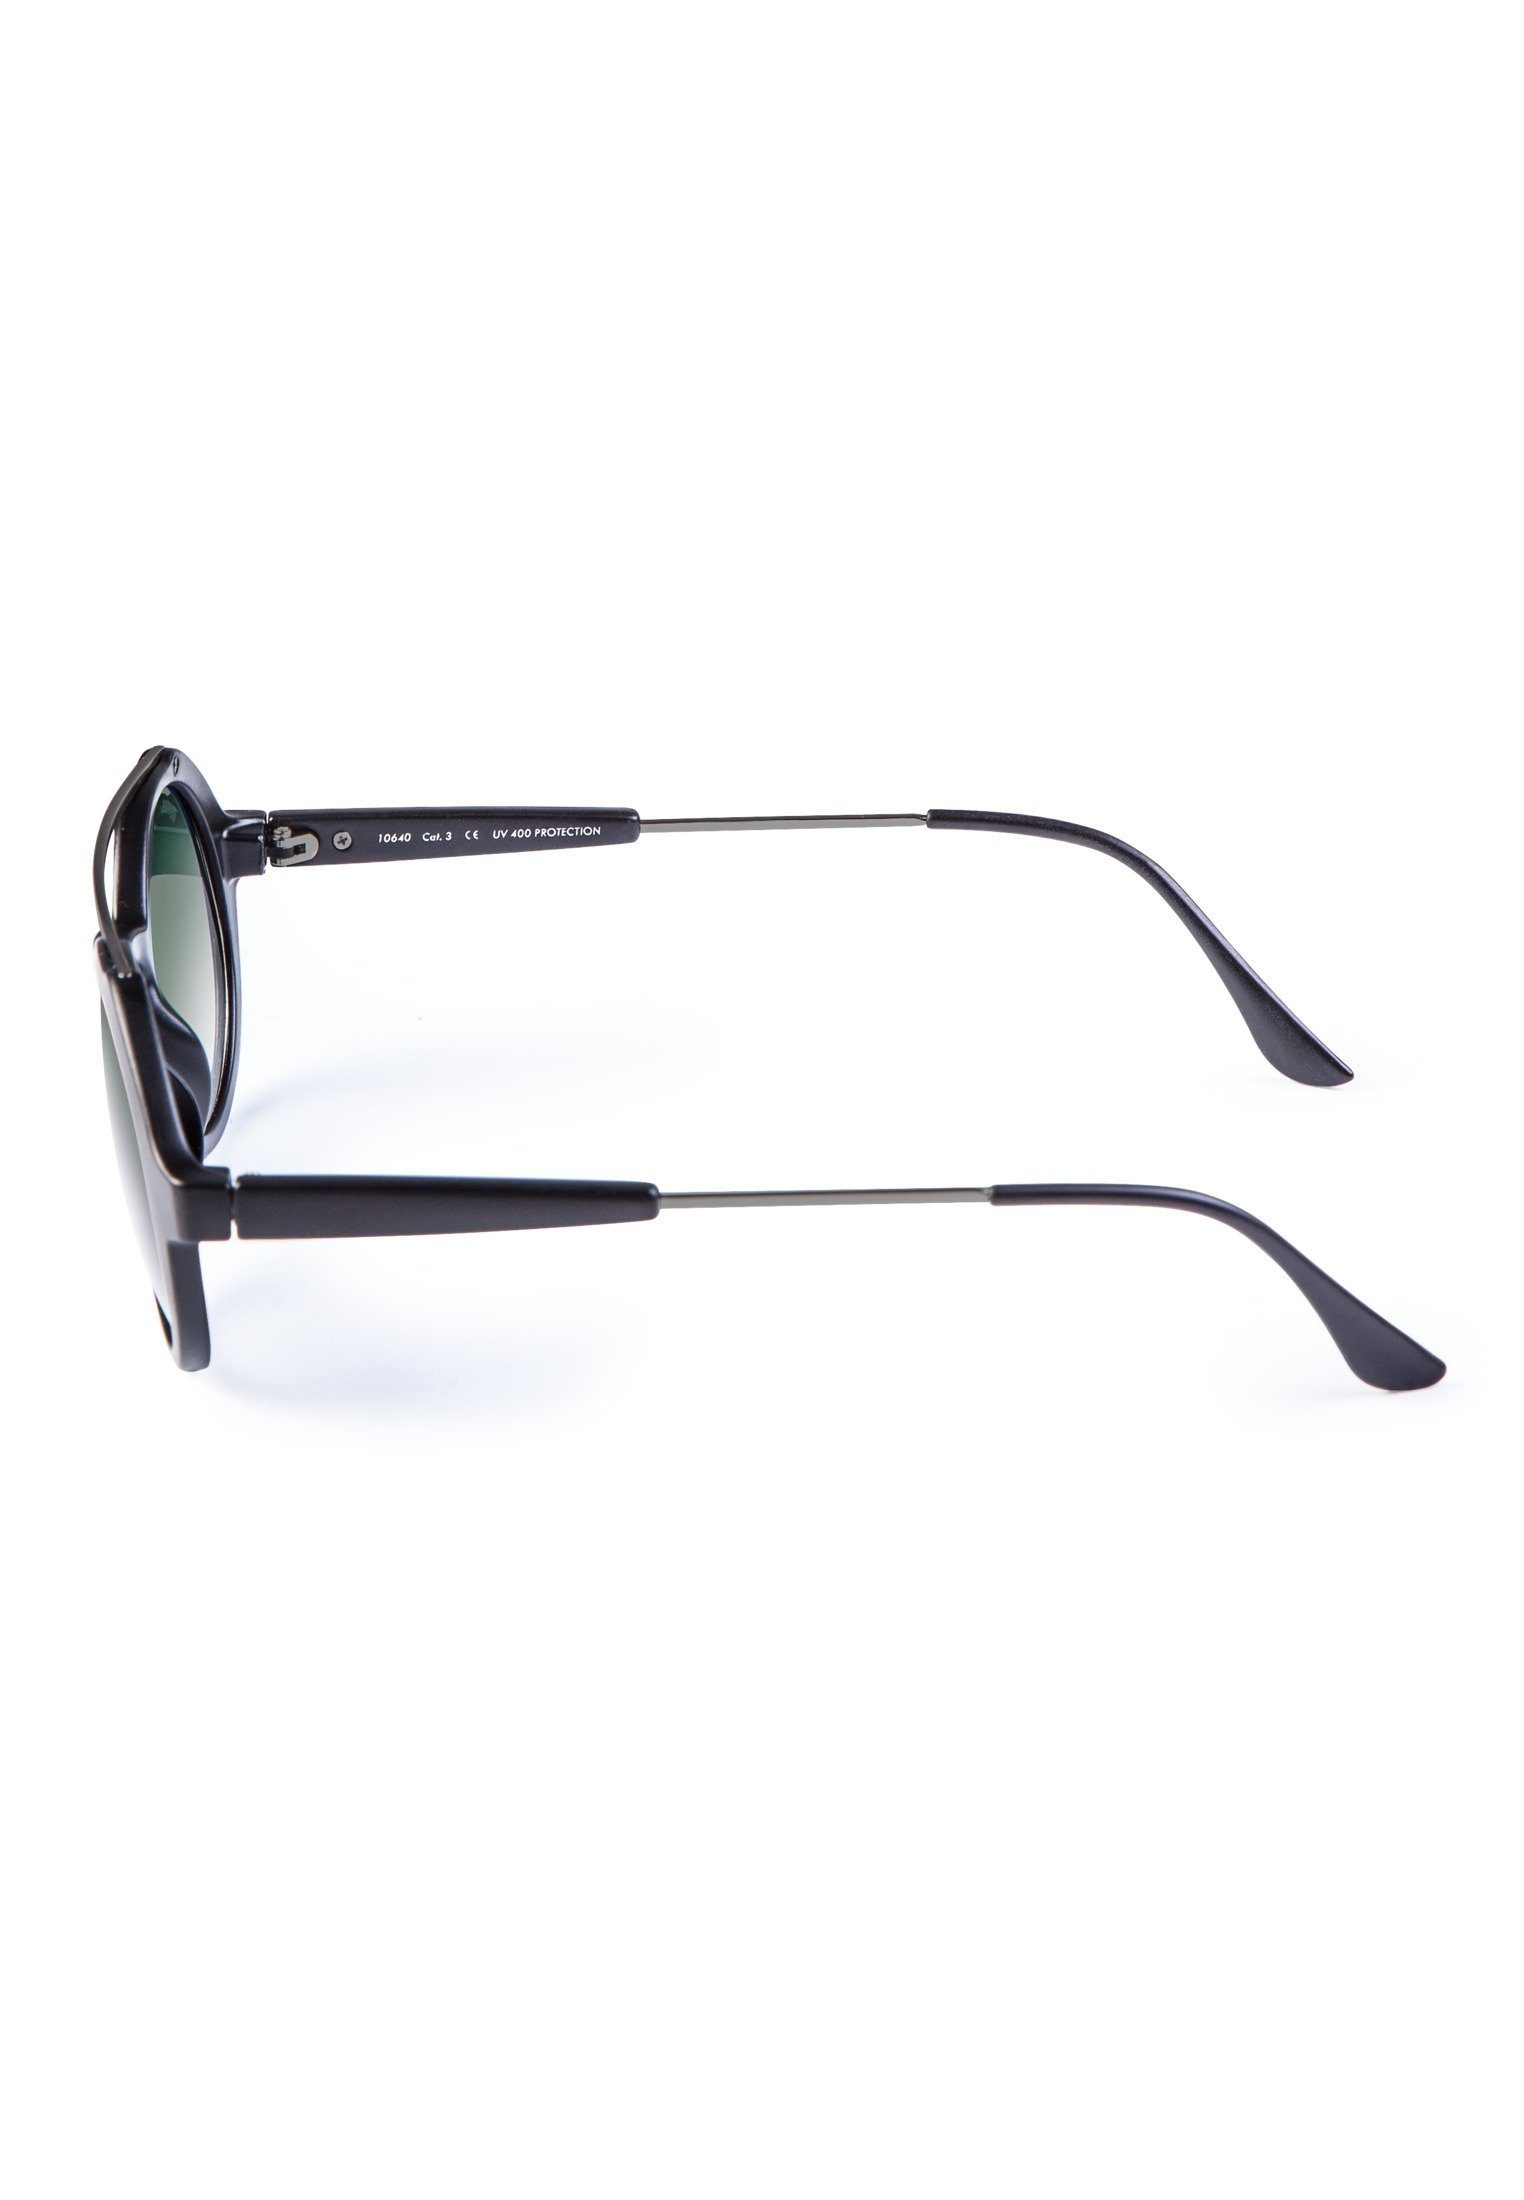 Sunglasses Retro Accessoires blk/grn Sonnenbrille Space MSTRDS